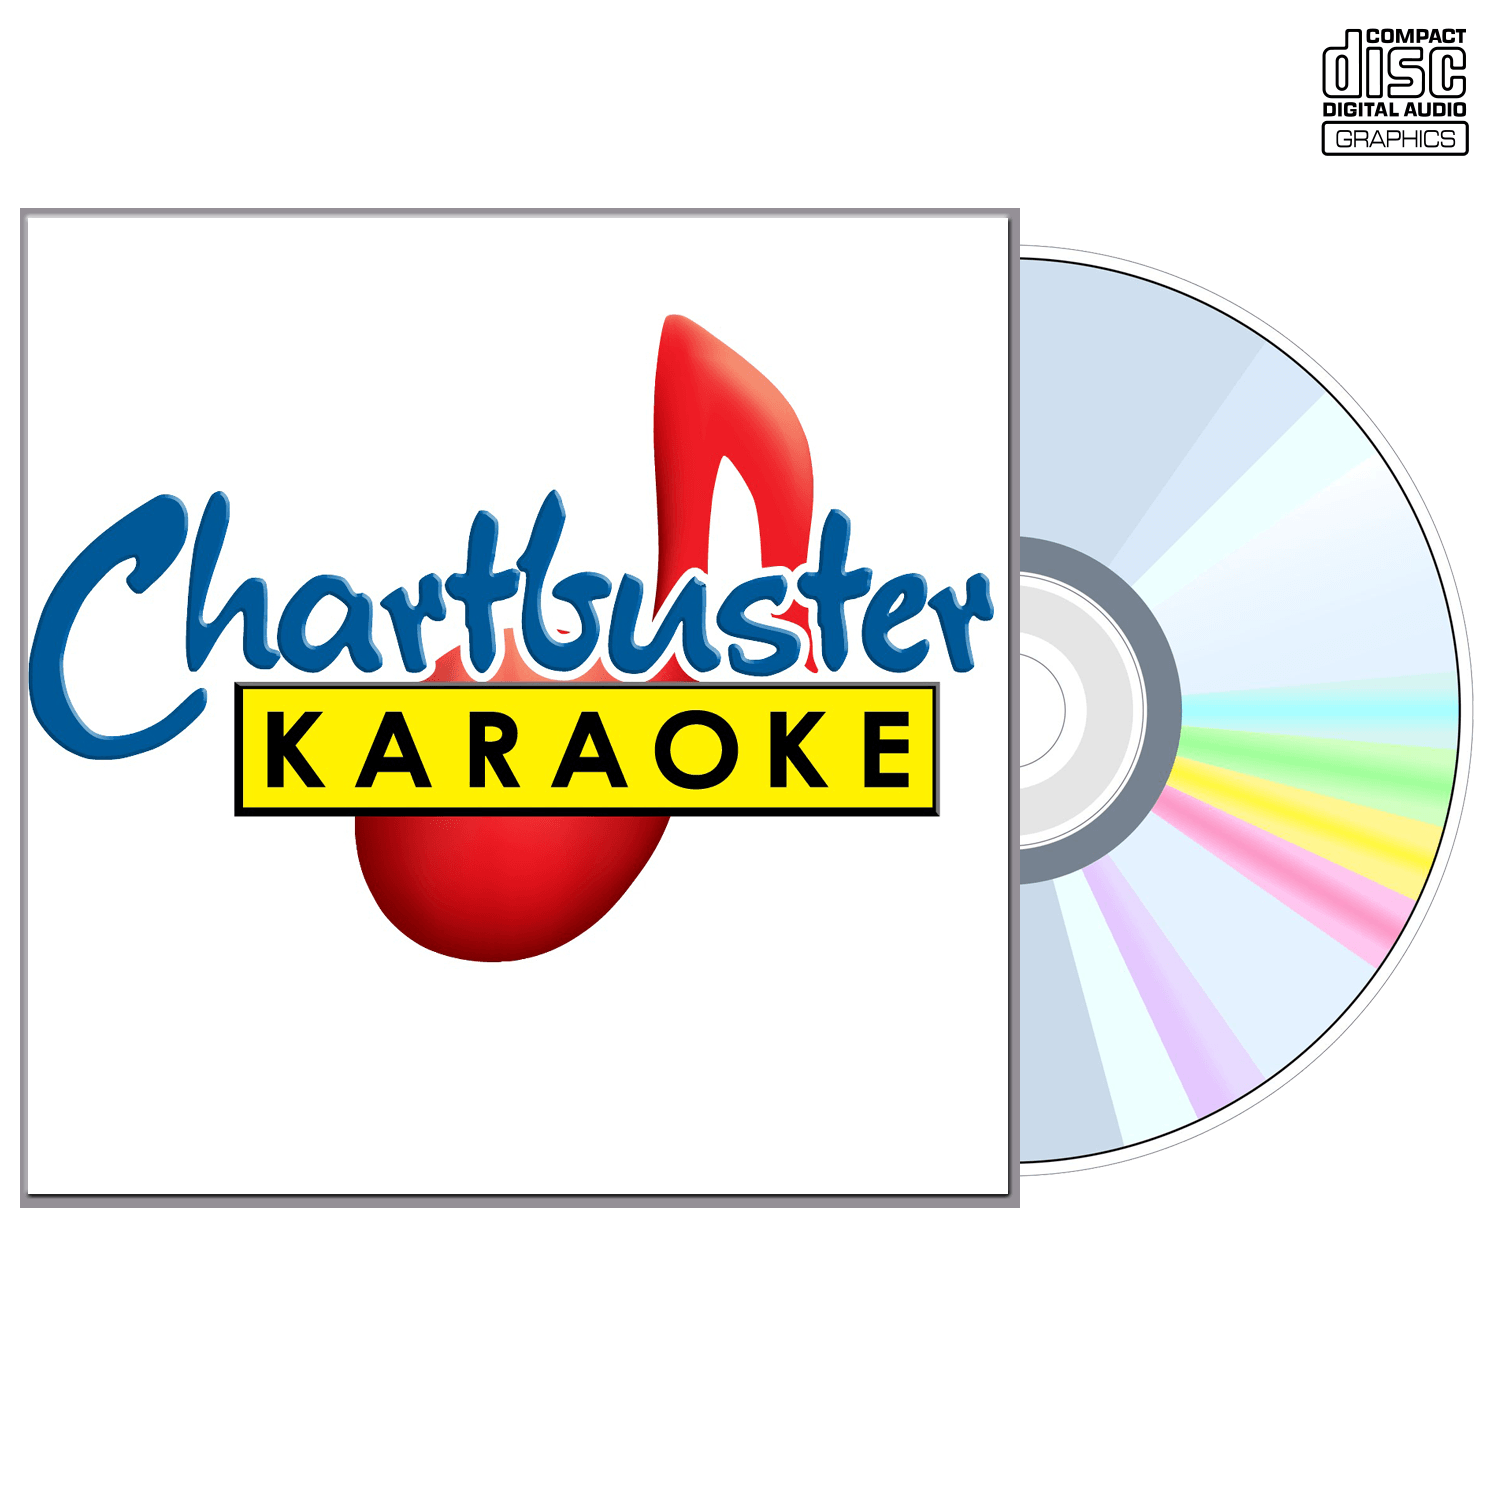 Rhett Akins - CD+G - Chartbuster Karaoke - Karaoke Home Entertainment